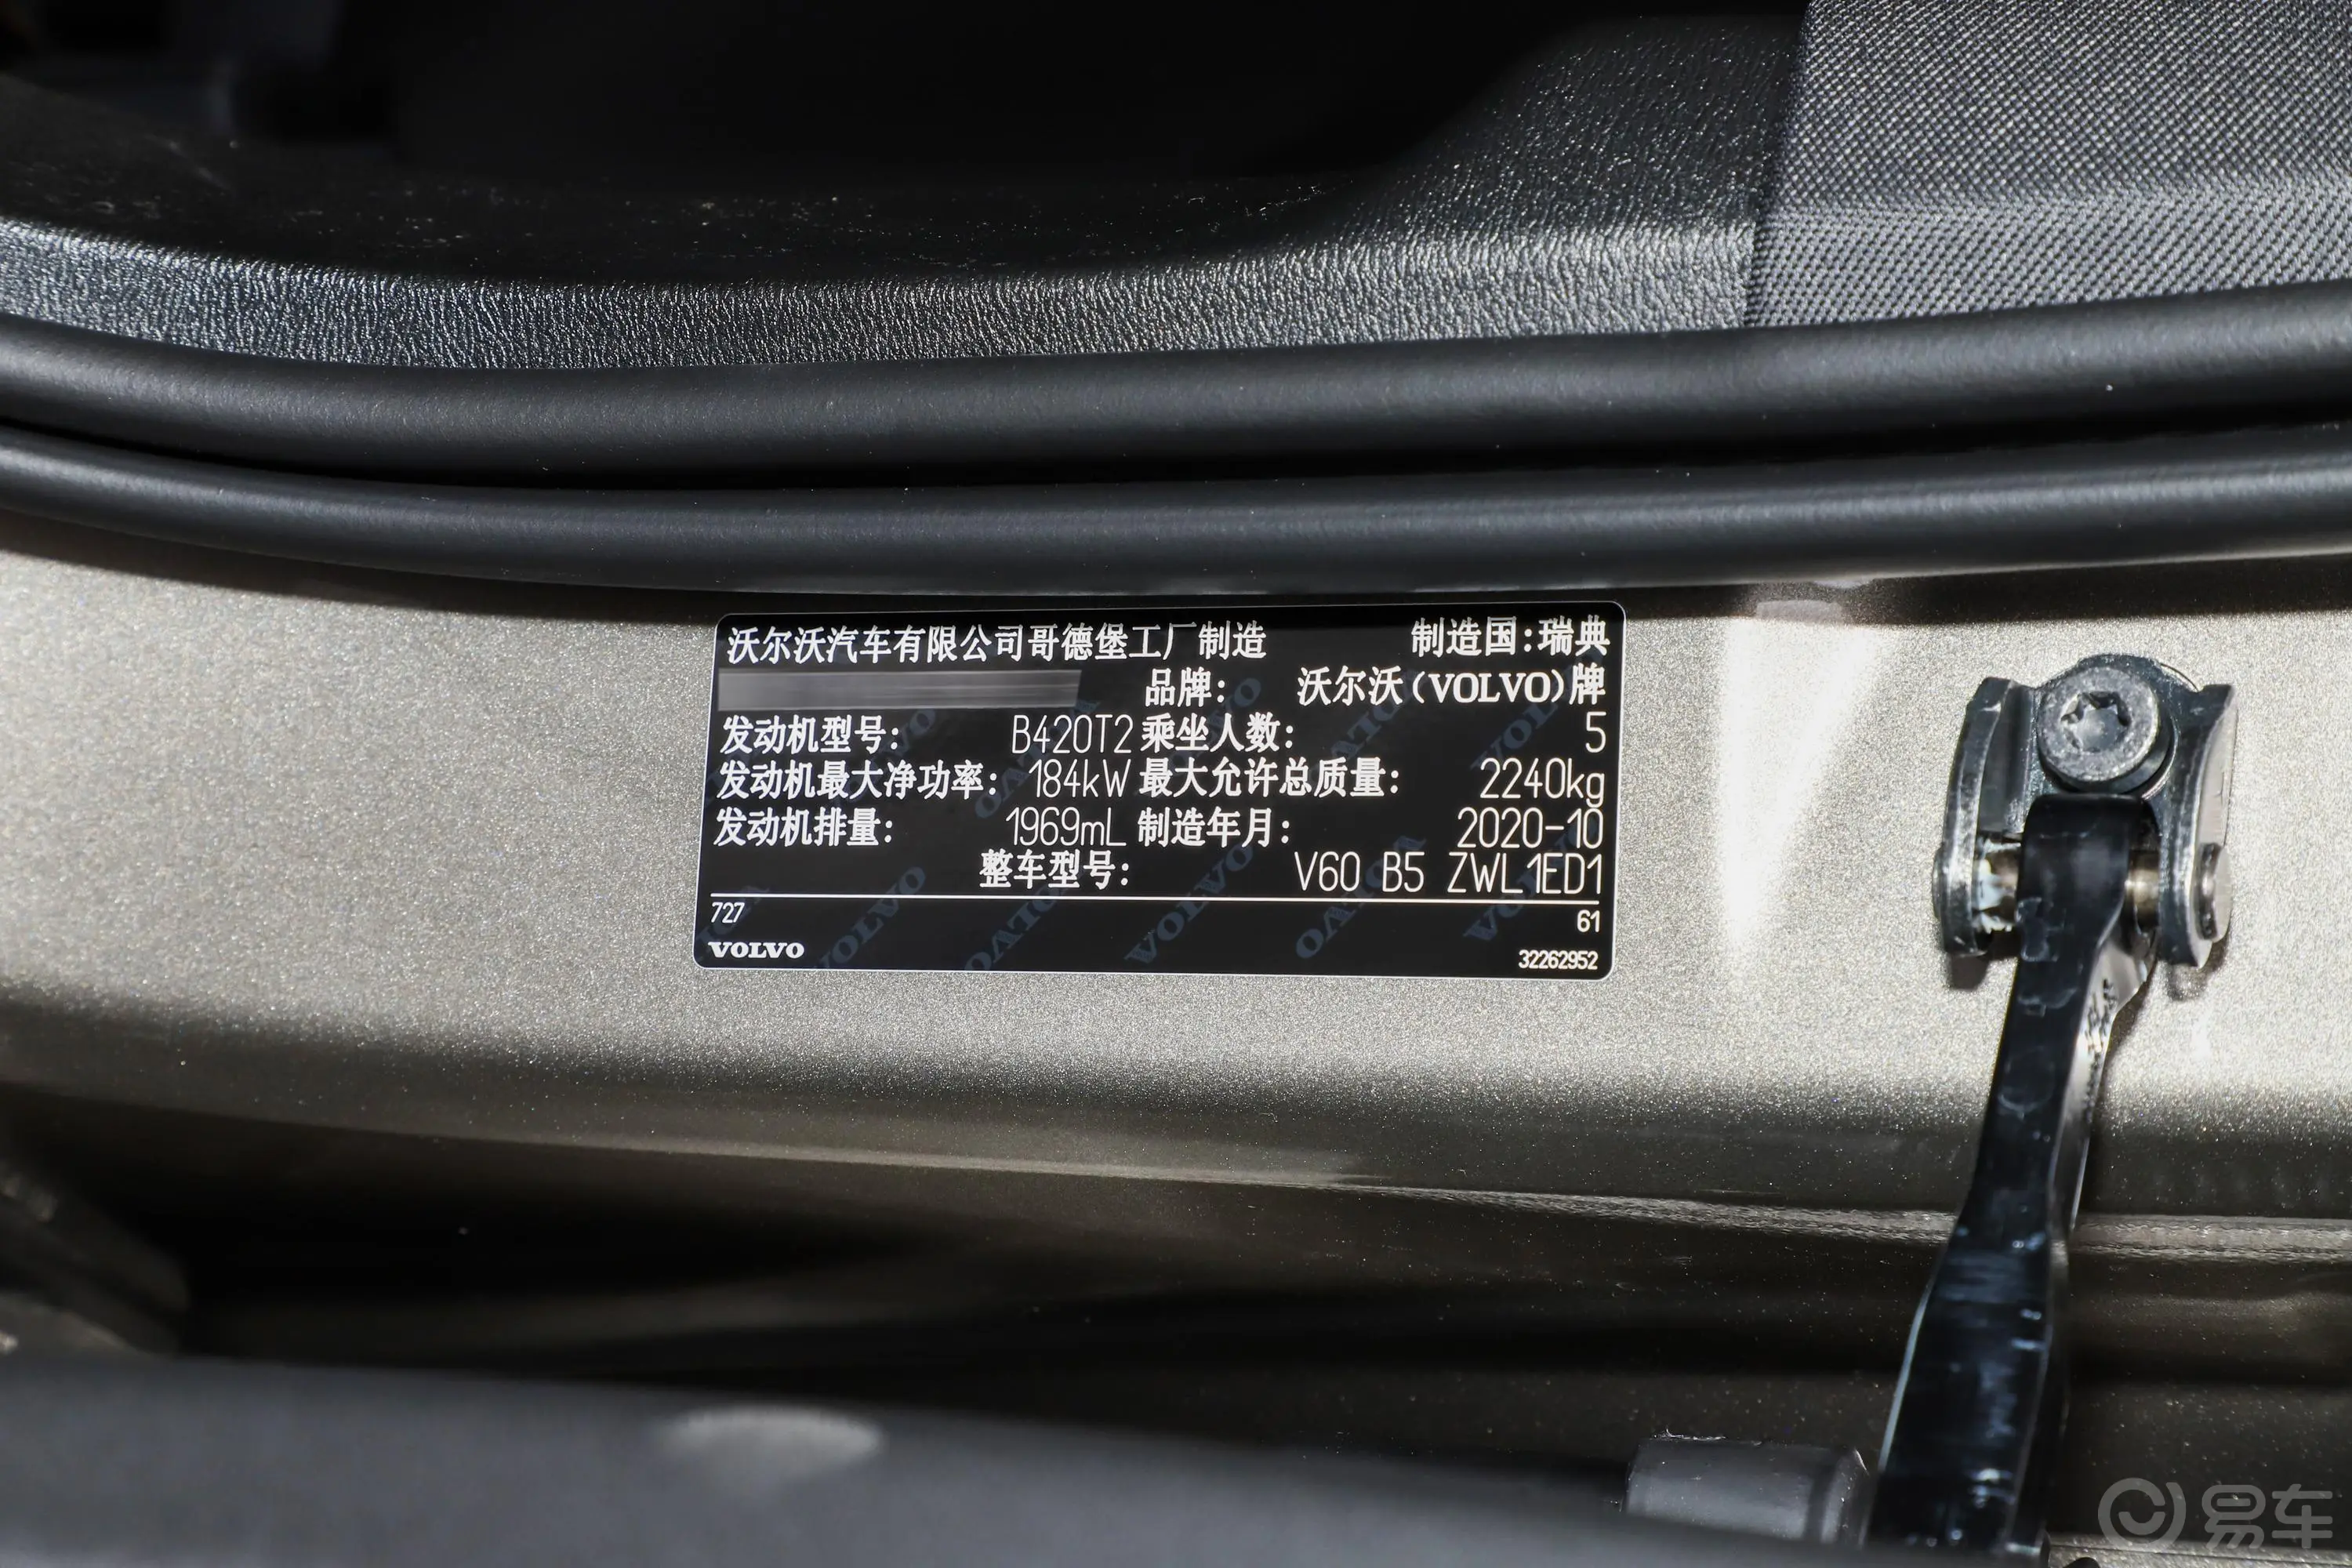 沃尔沃V60B5 智远豪华版车辆信息铭牌